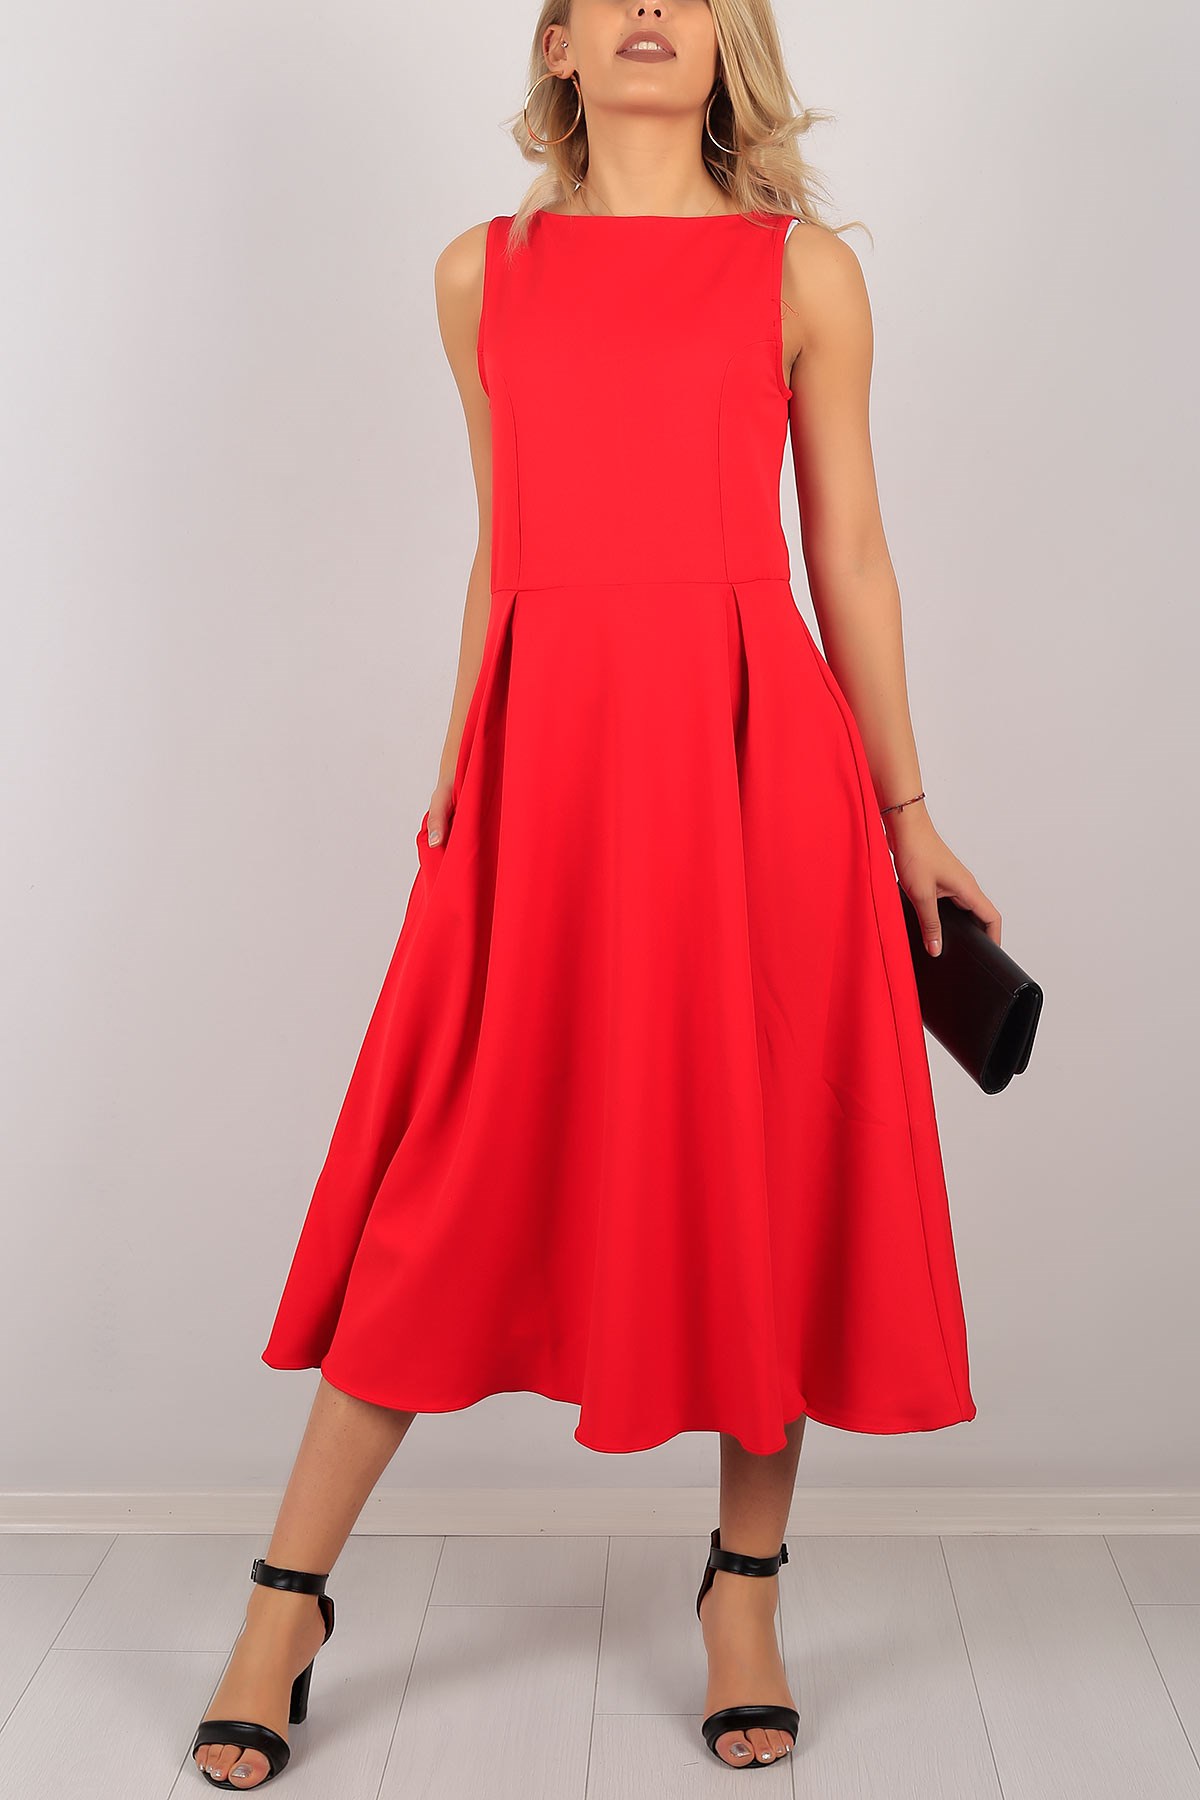 Sıfır Kol Kırmızı Bayan Elbise 6541B